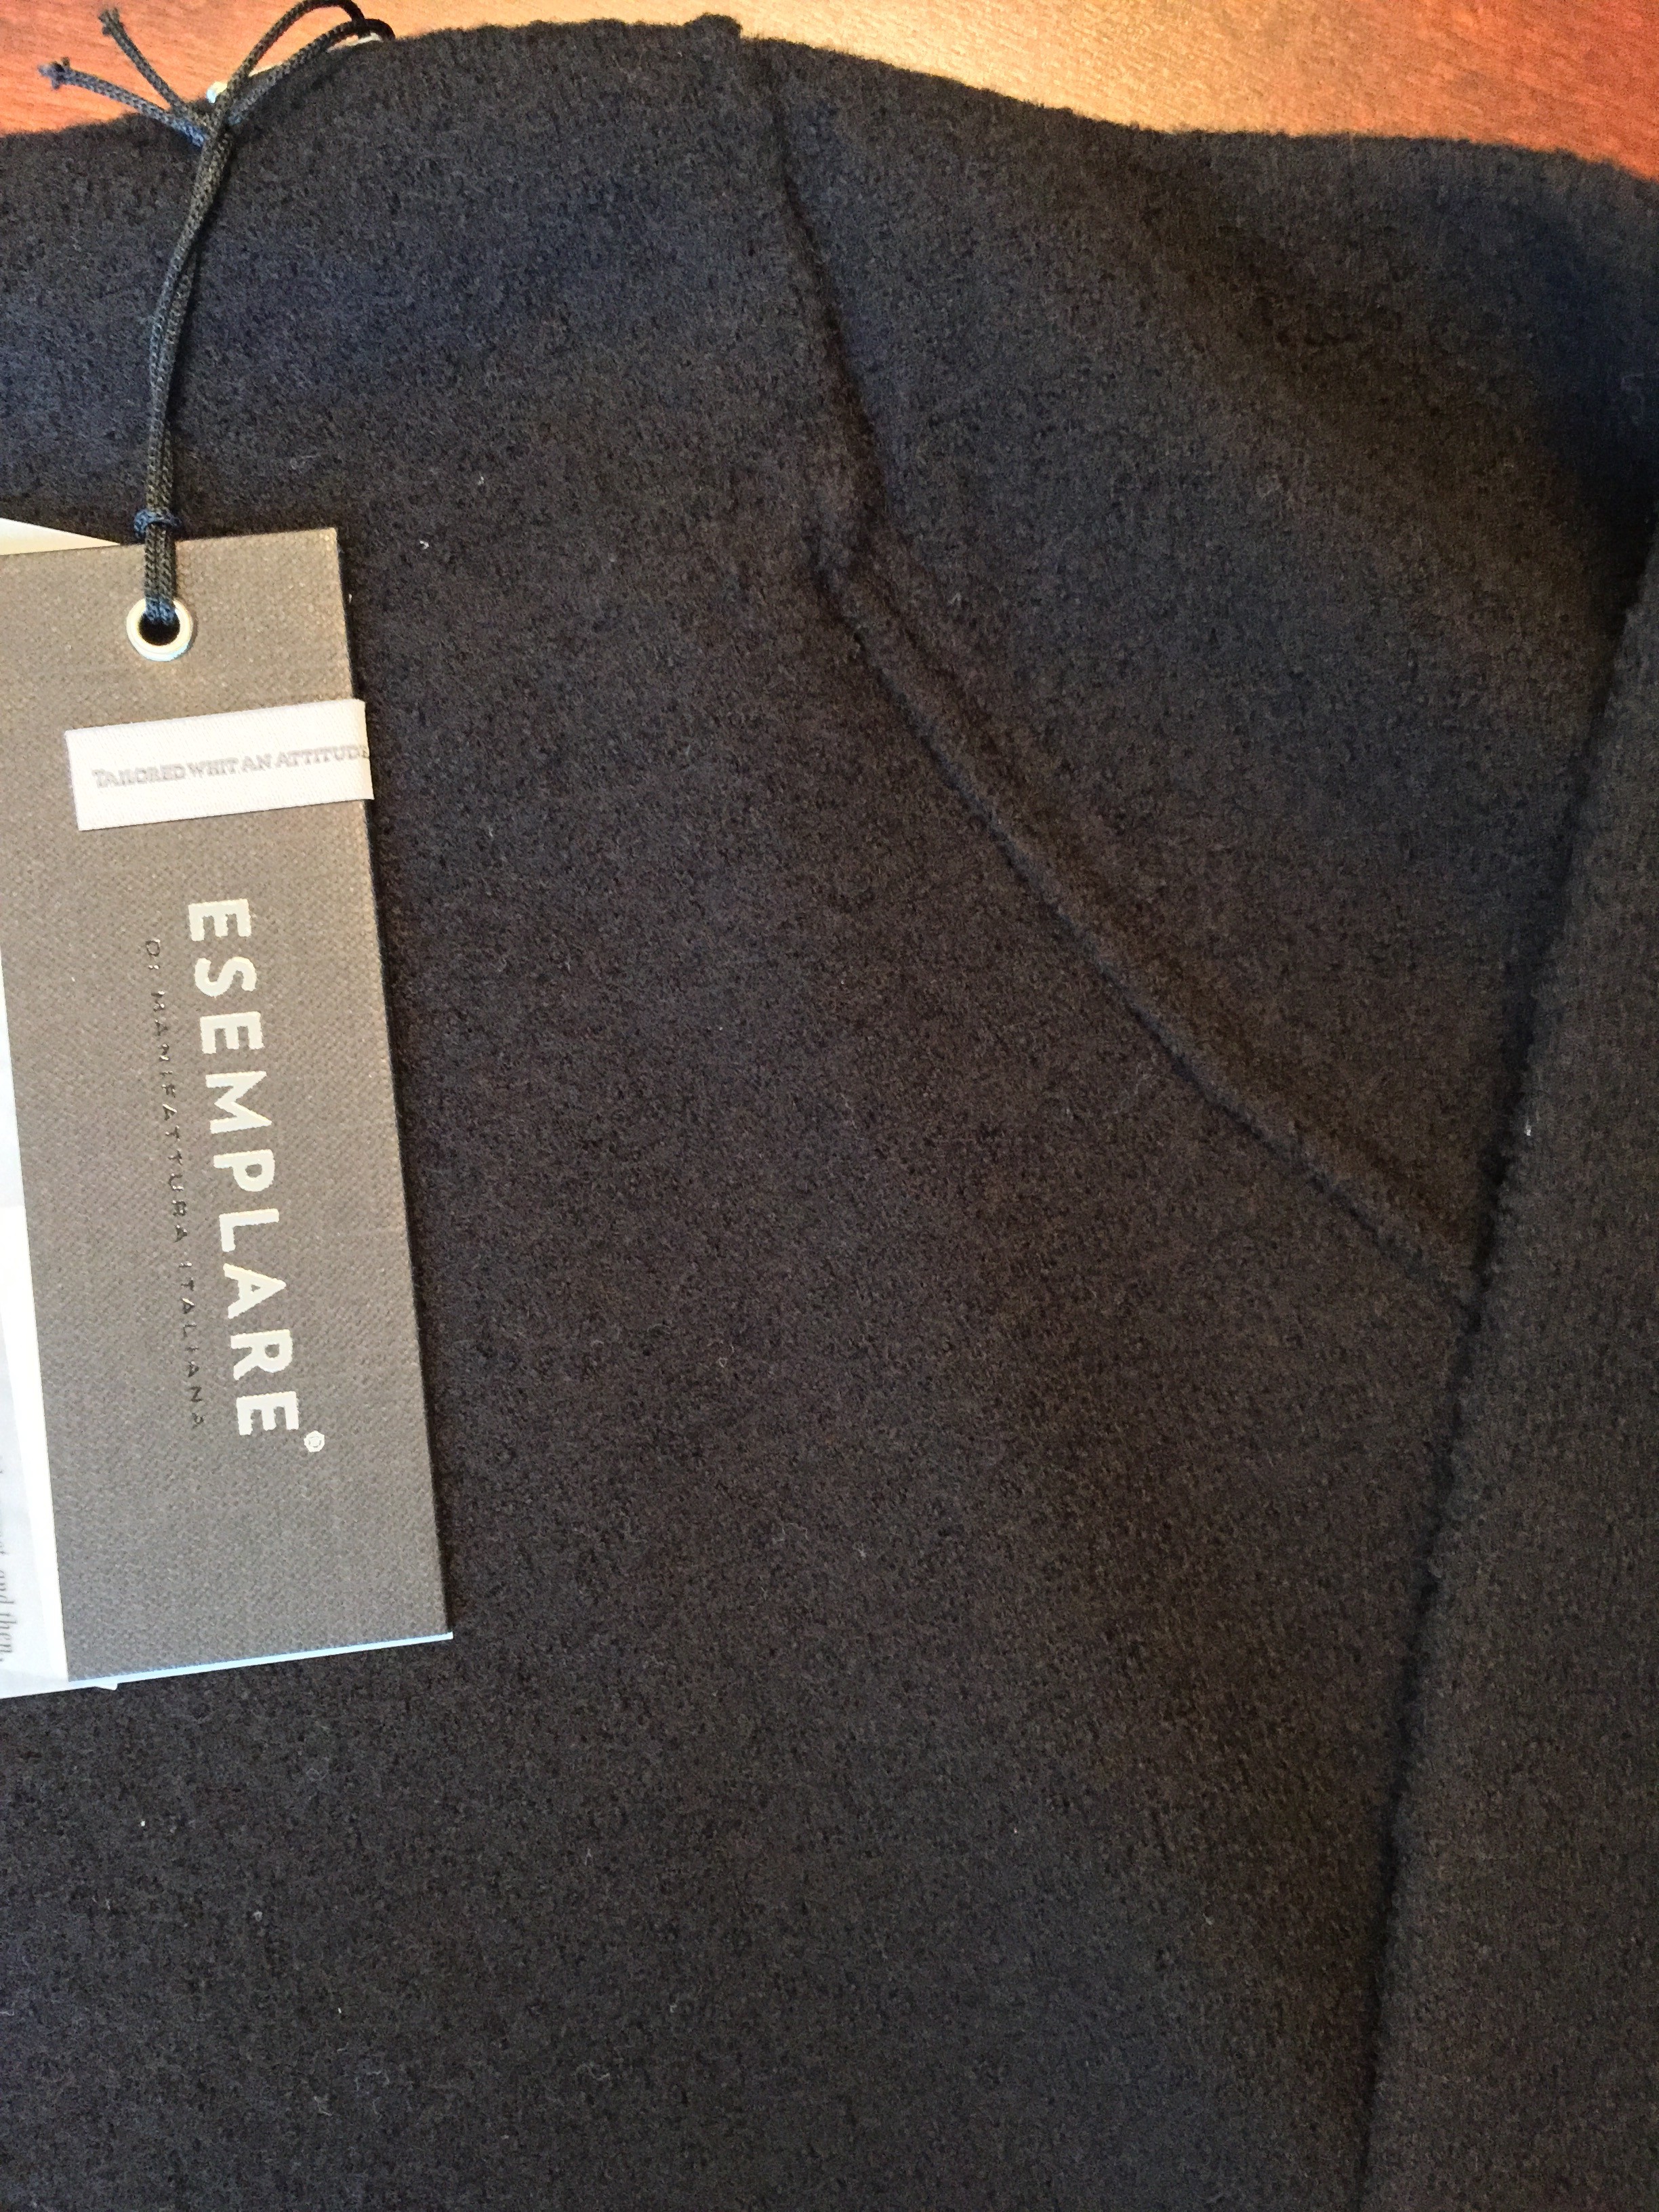 New NMWA sweat shirts / sweaters: Niche XL, Esemplare, Monitaly | Styleforum